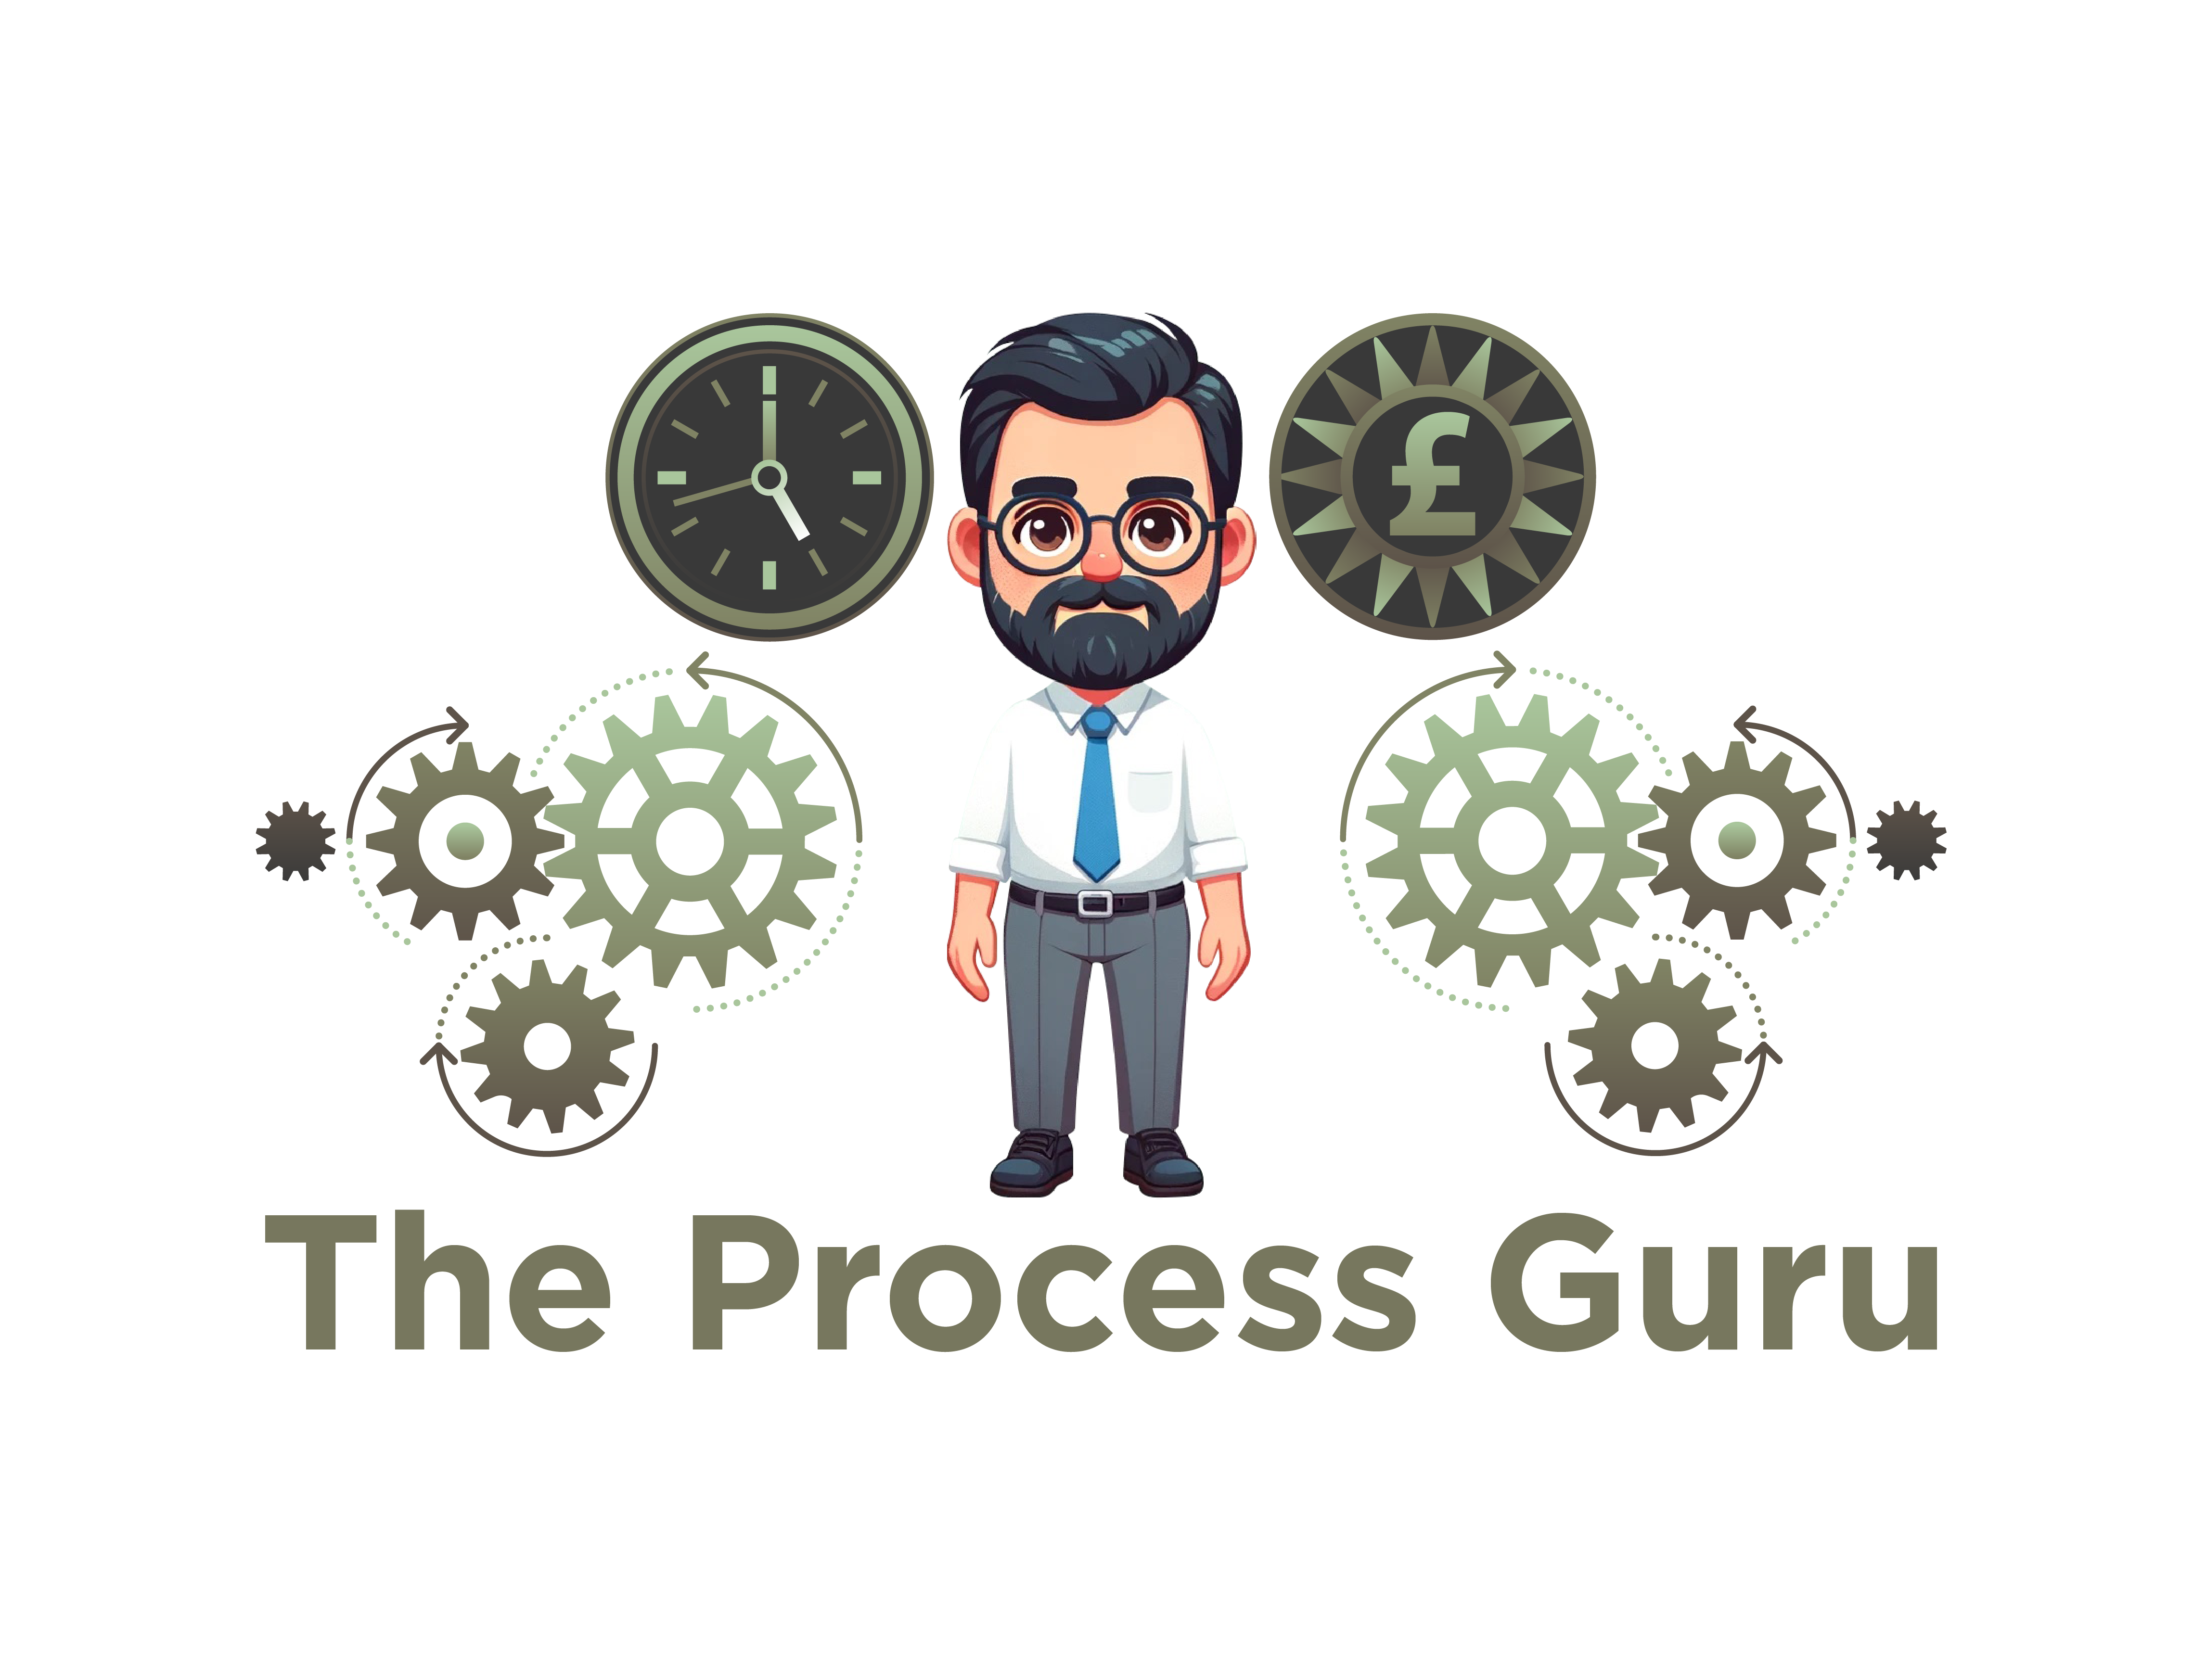 The Process Guru Ltd